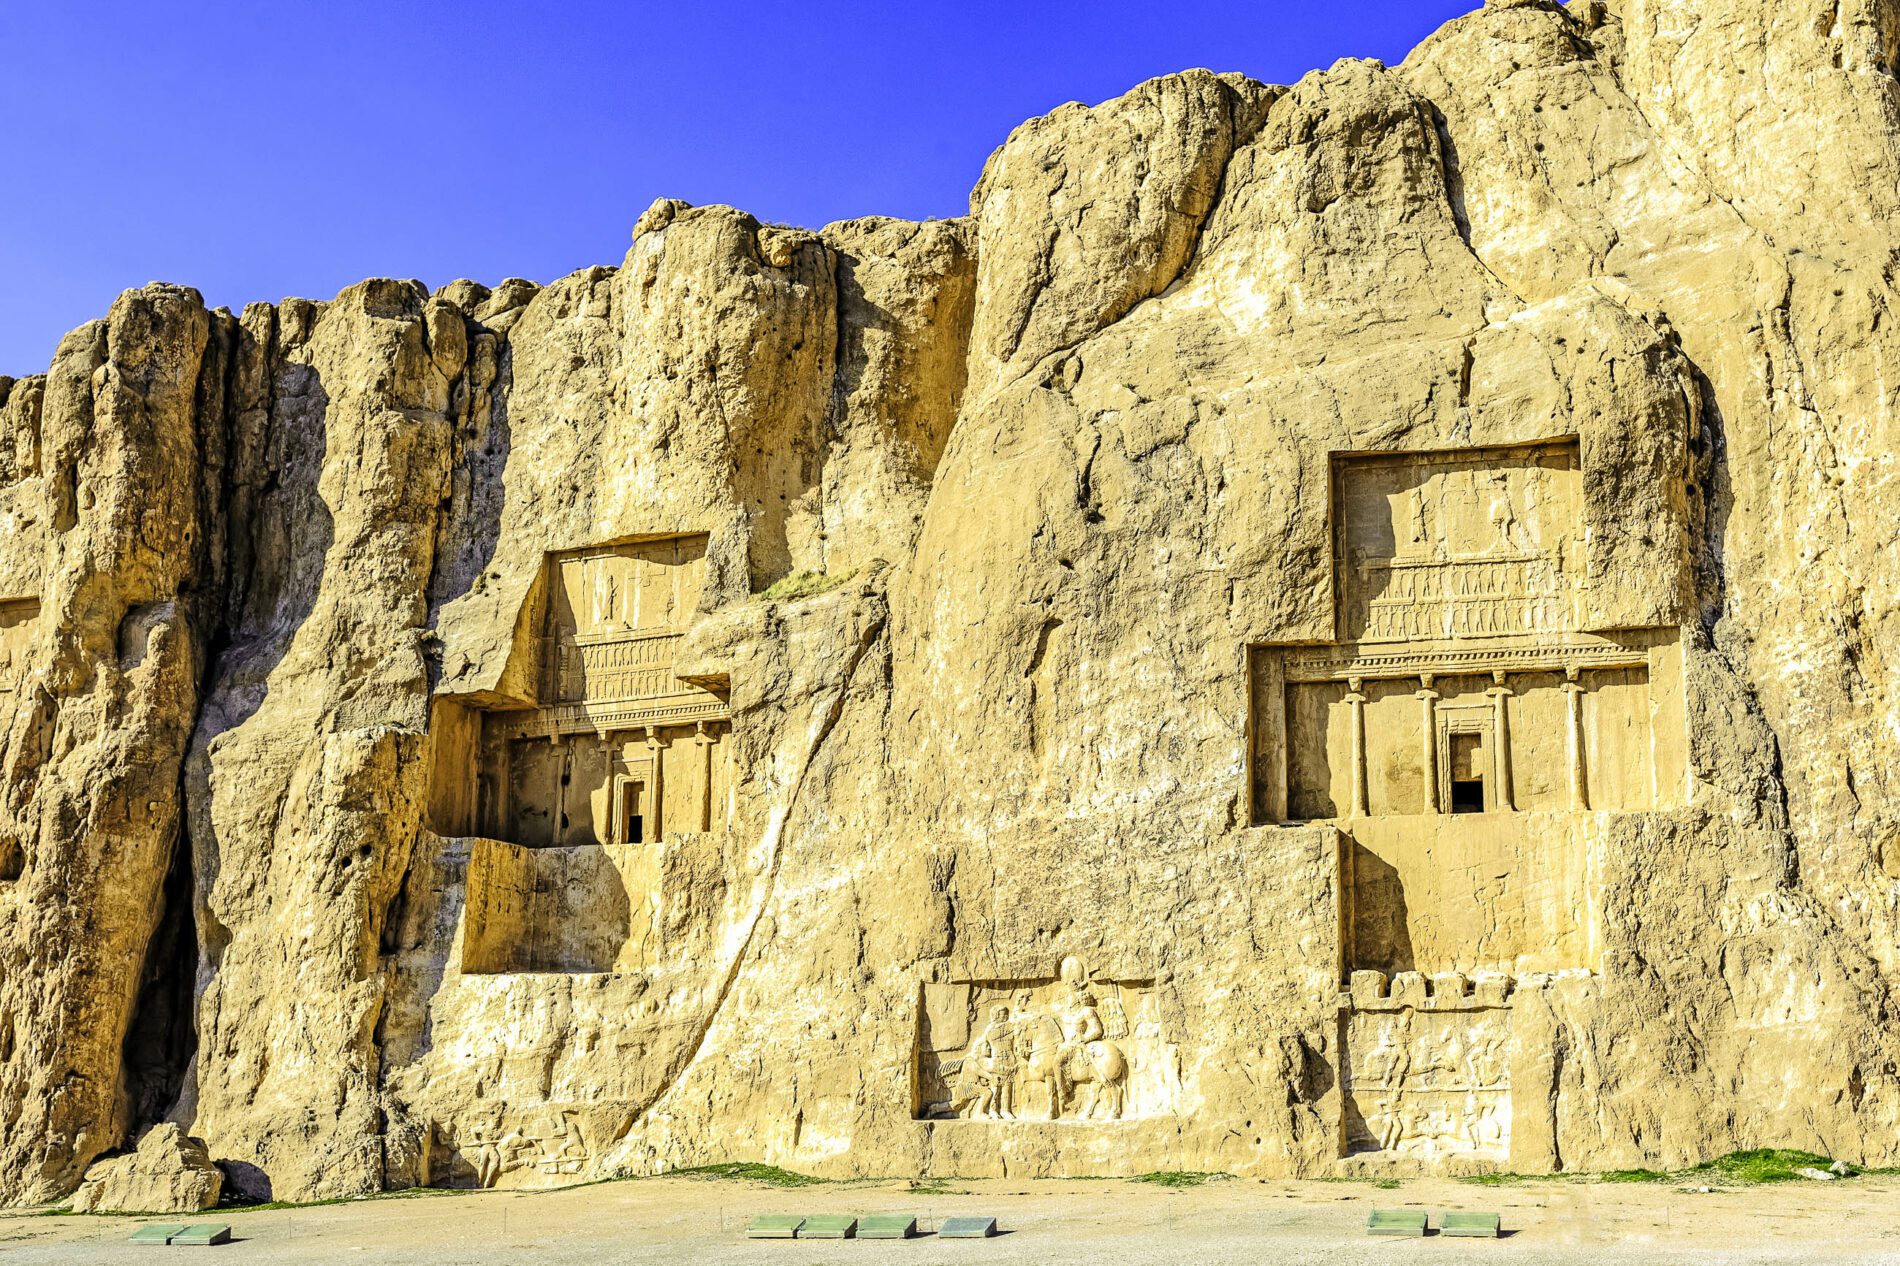 Les tombes royales et leurs reliefs rocheux ornementés sur le site archéologique de Naqsh-e Rostam, Iran - © Ko.Yo / Shutterstock